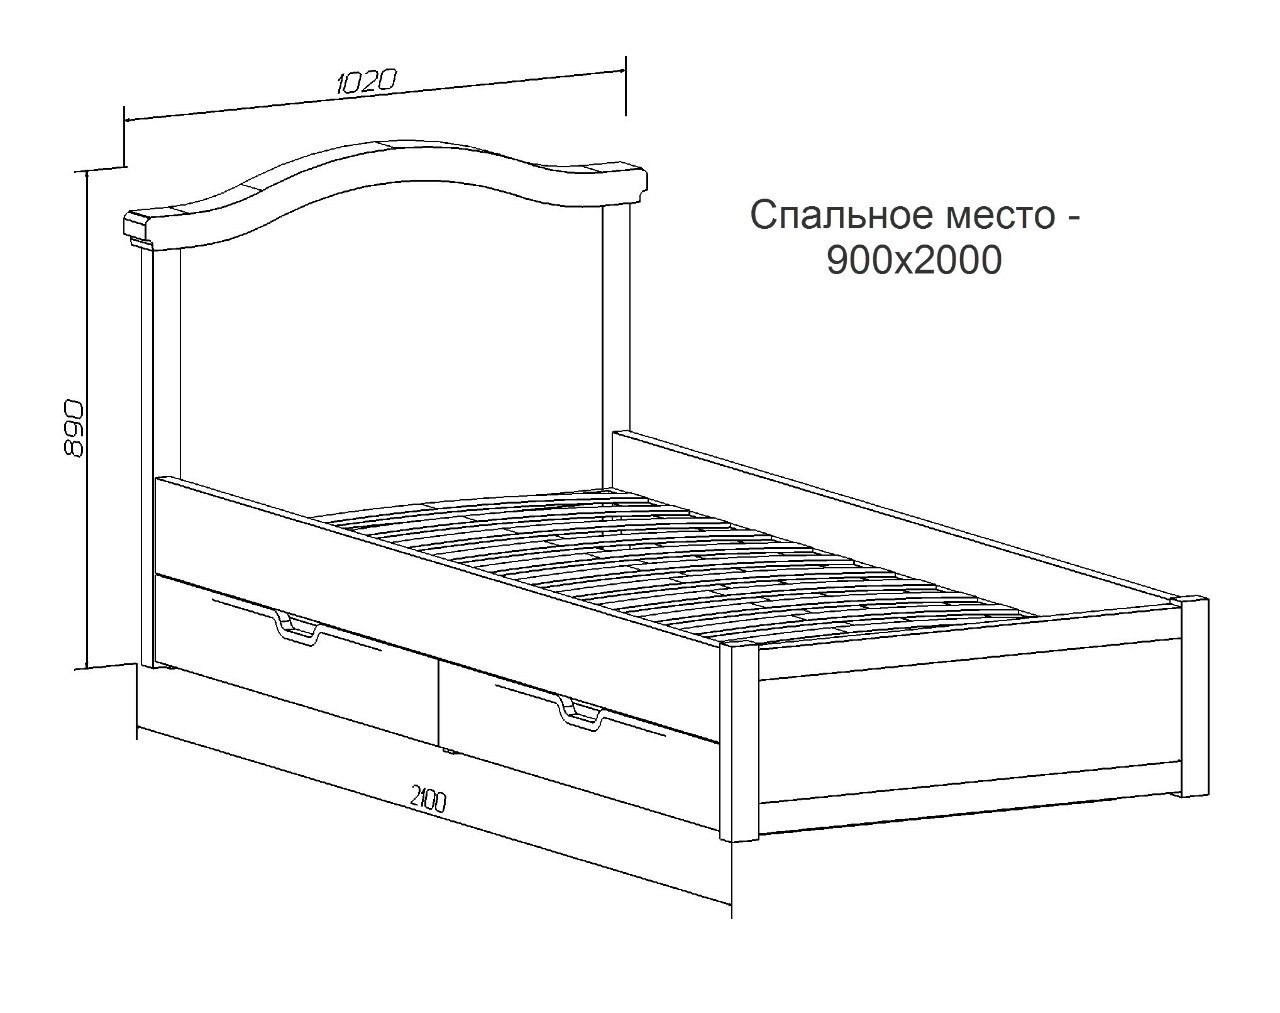 Кровать 900х2000 схема чертеж